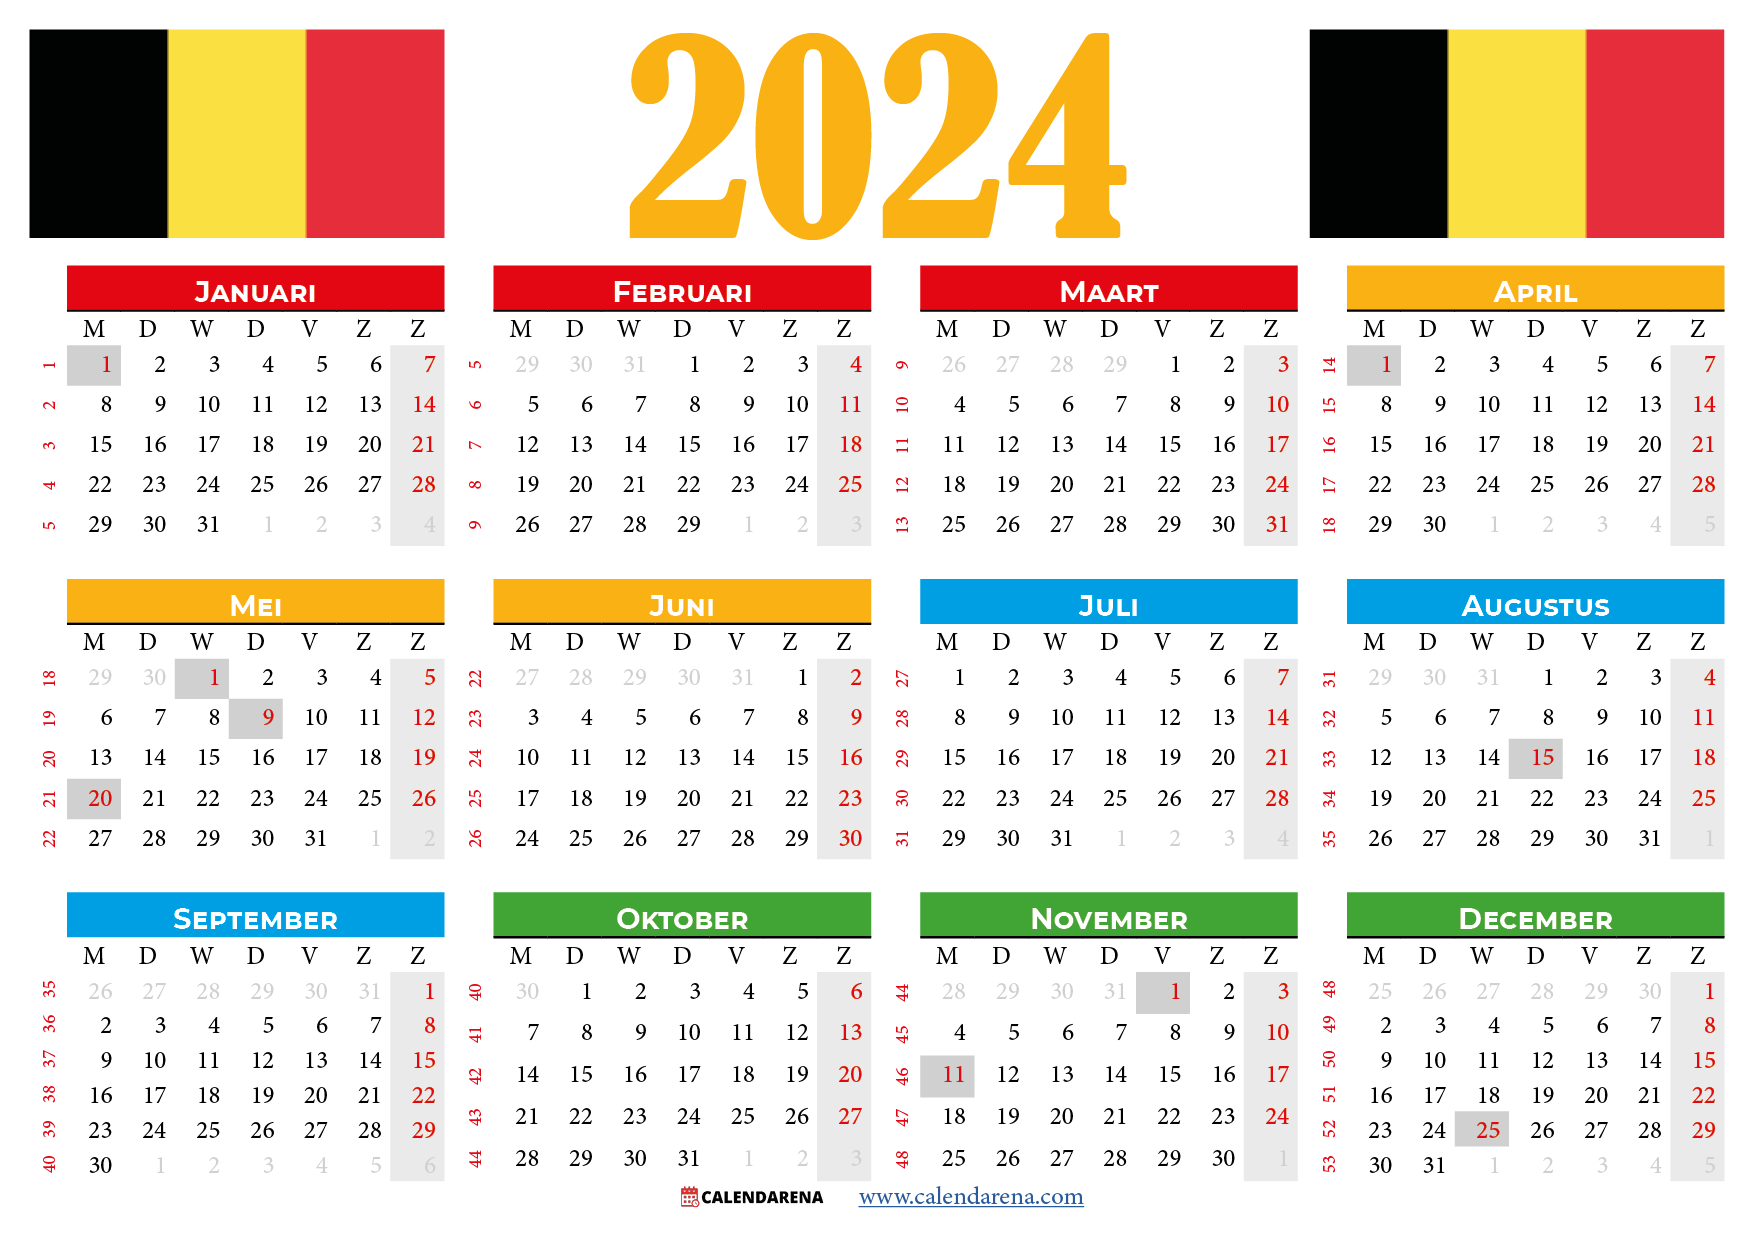 kalender met weeknummers 2024 België